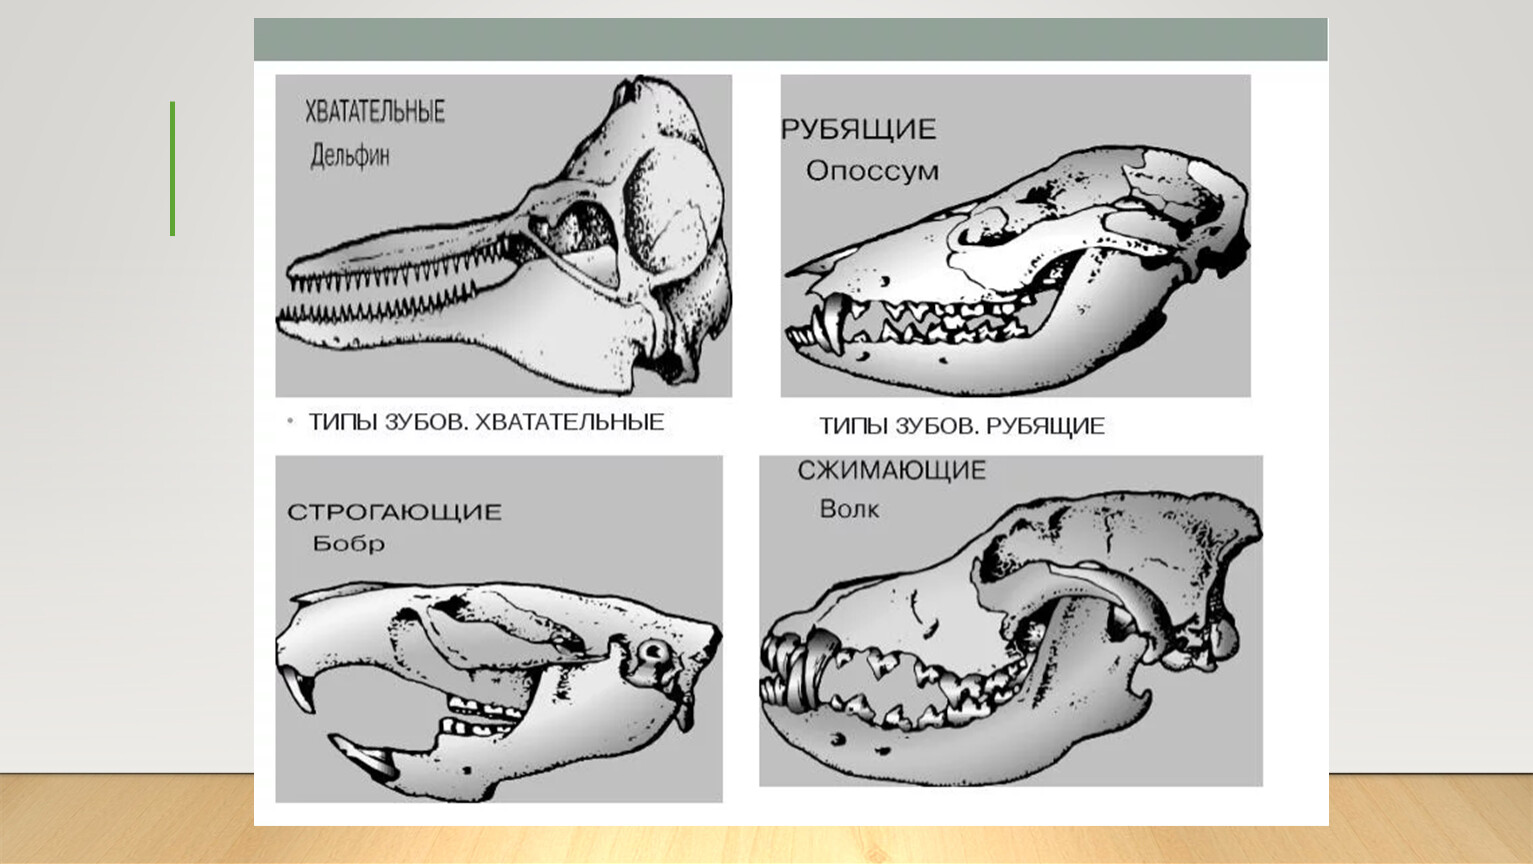 Класс млекопитающие череп. Зубная система млекопитающих анатомия. Строение зубов млекопитающих зубная система. Зубные системы животных разных отрядов млекопитающих. Зубная система насекомоядных млекопитающих.